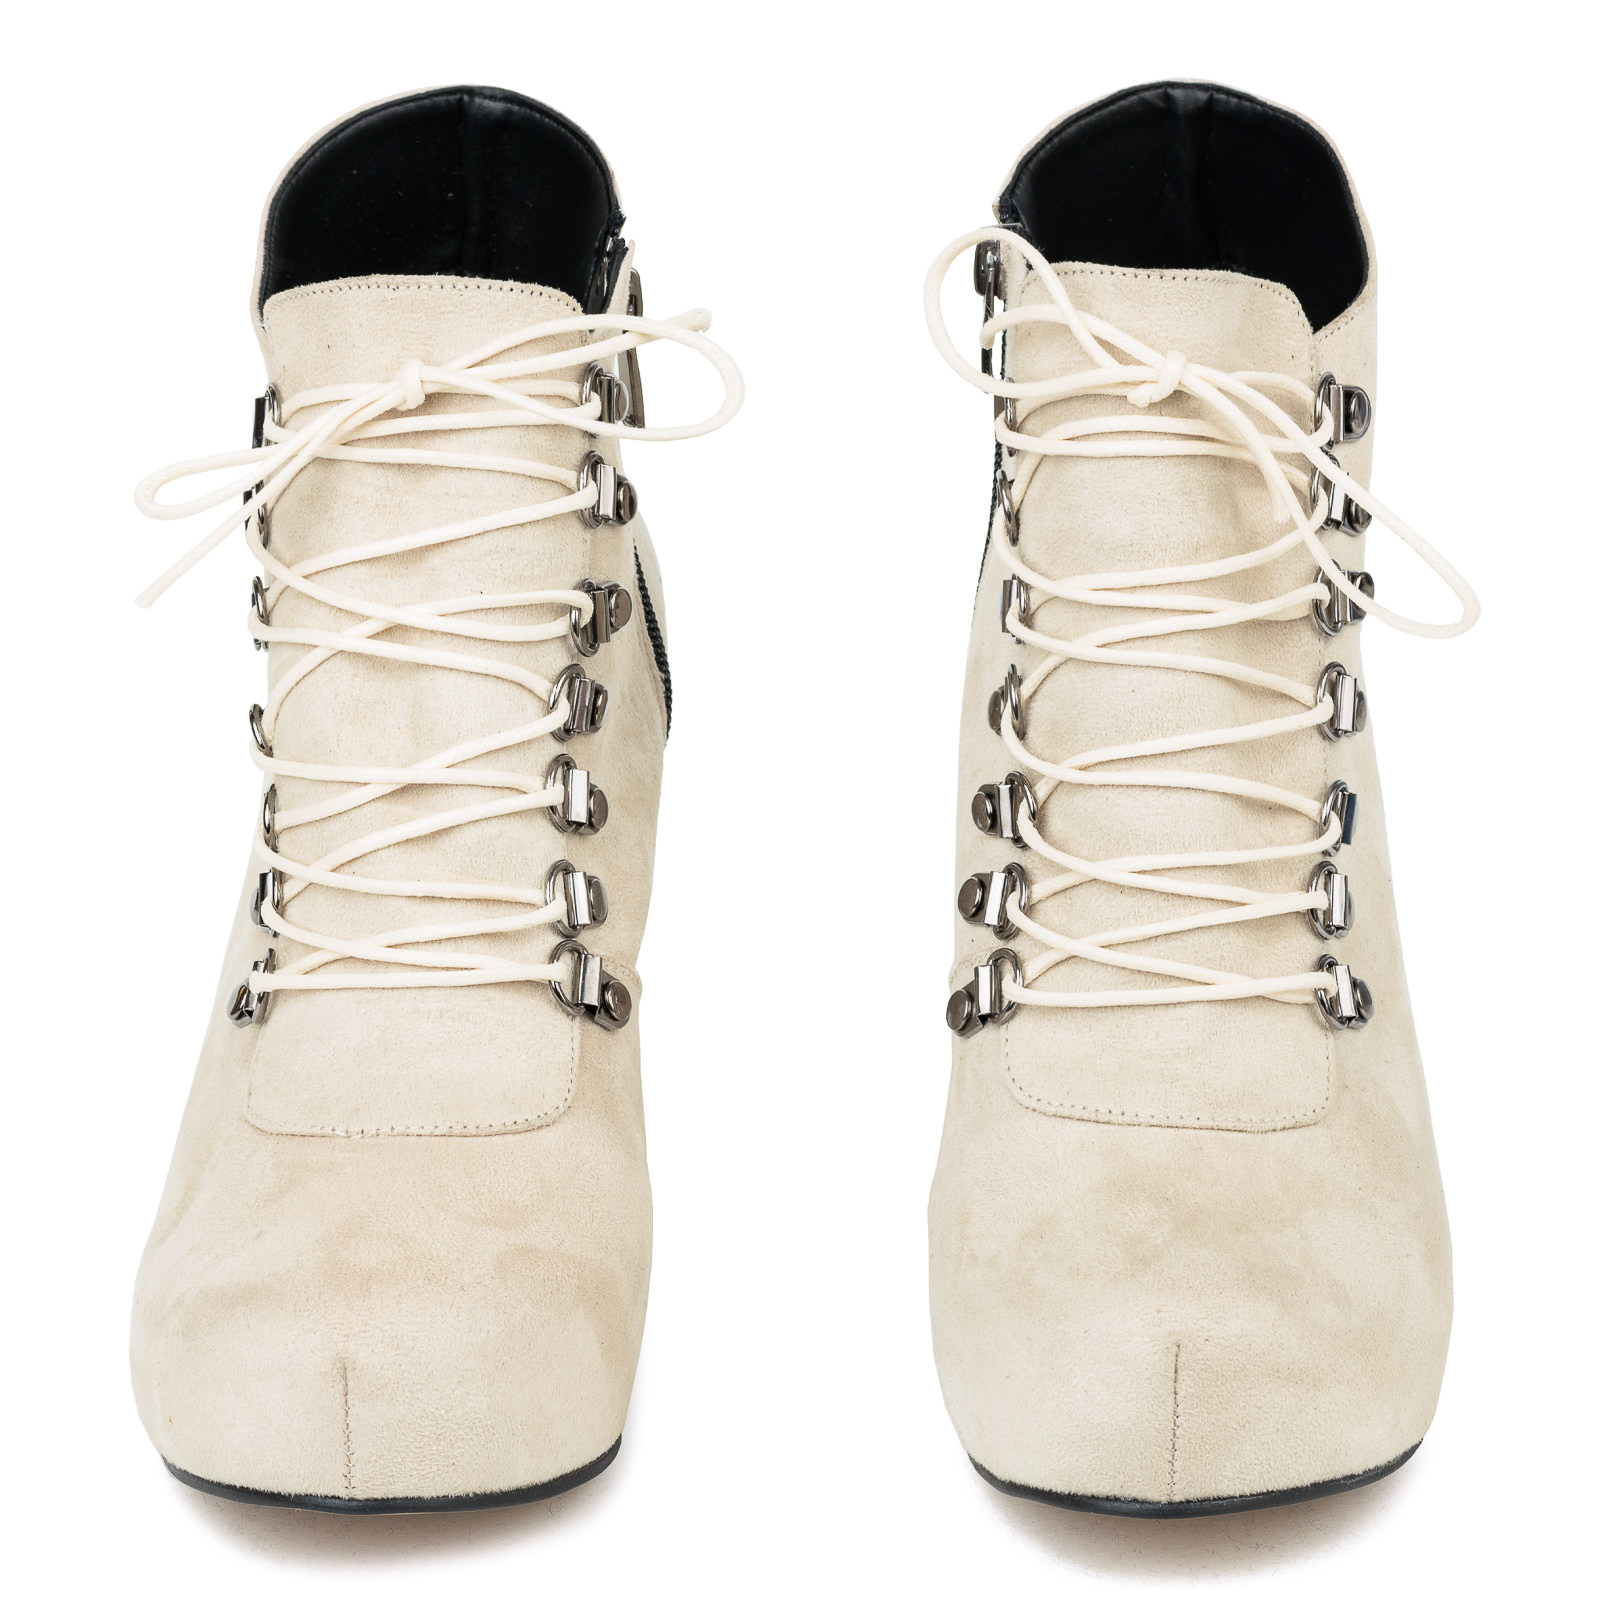 Women ankle boots B415 - BEIGE